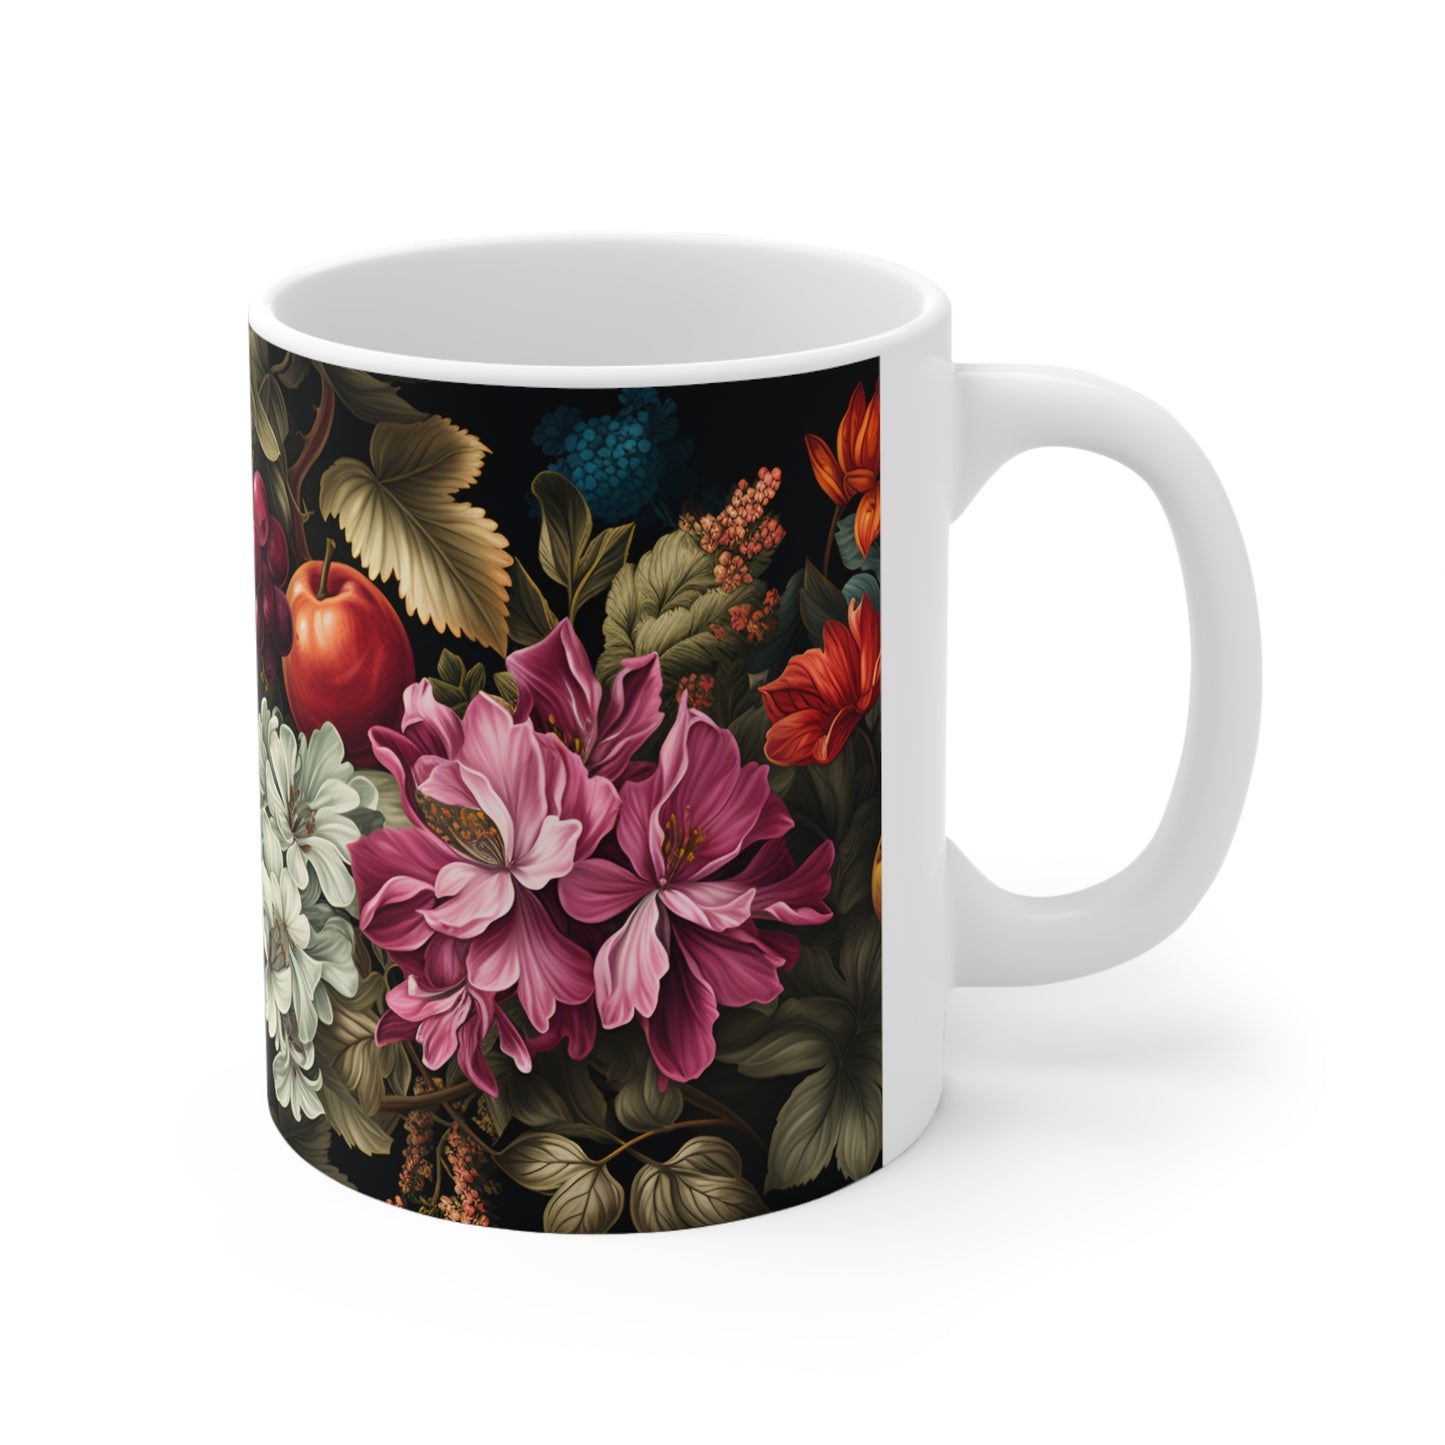 Fruits and Flowers Mug  - 11 oz Ceramic Coffee Mug